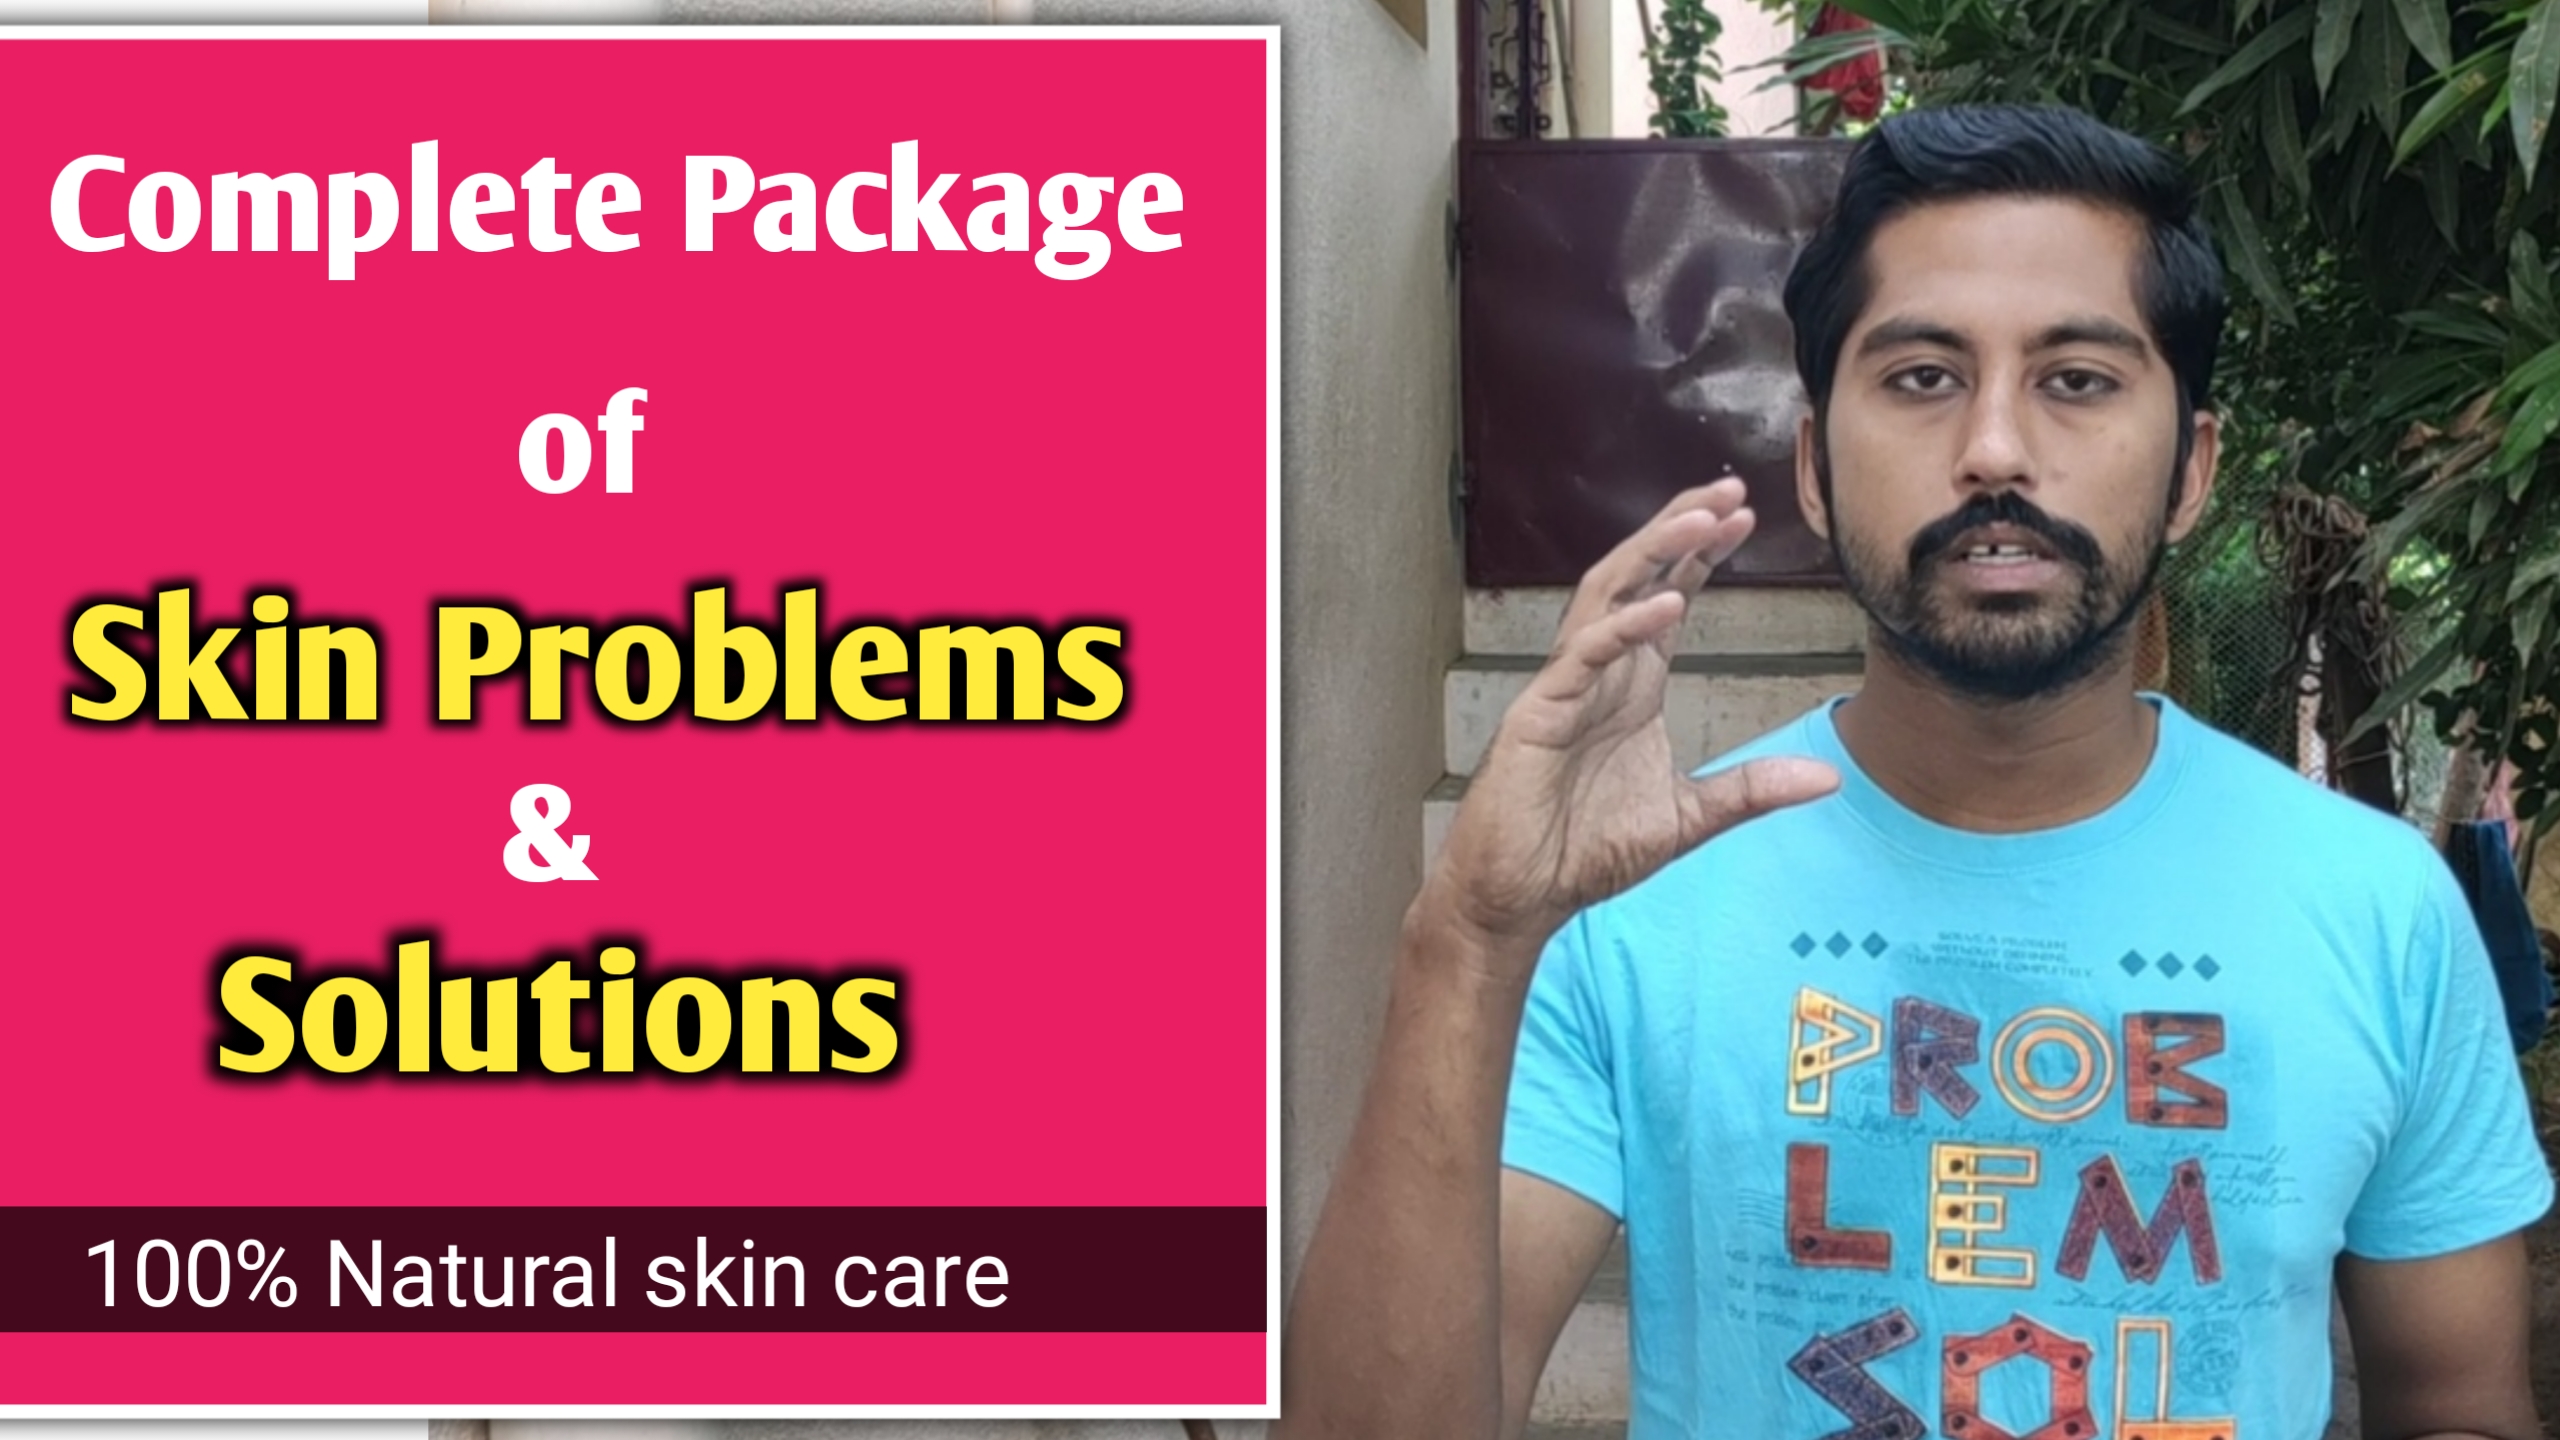 அனைத்து விதமான தோல் நோய்களும் குணமாக | Complete skin problem solutions in tamil | Next Day 360